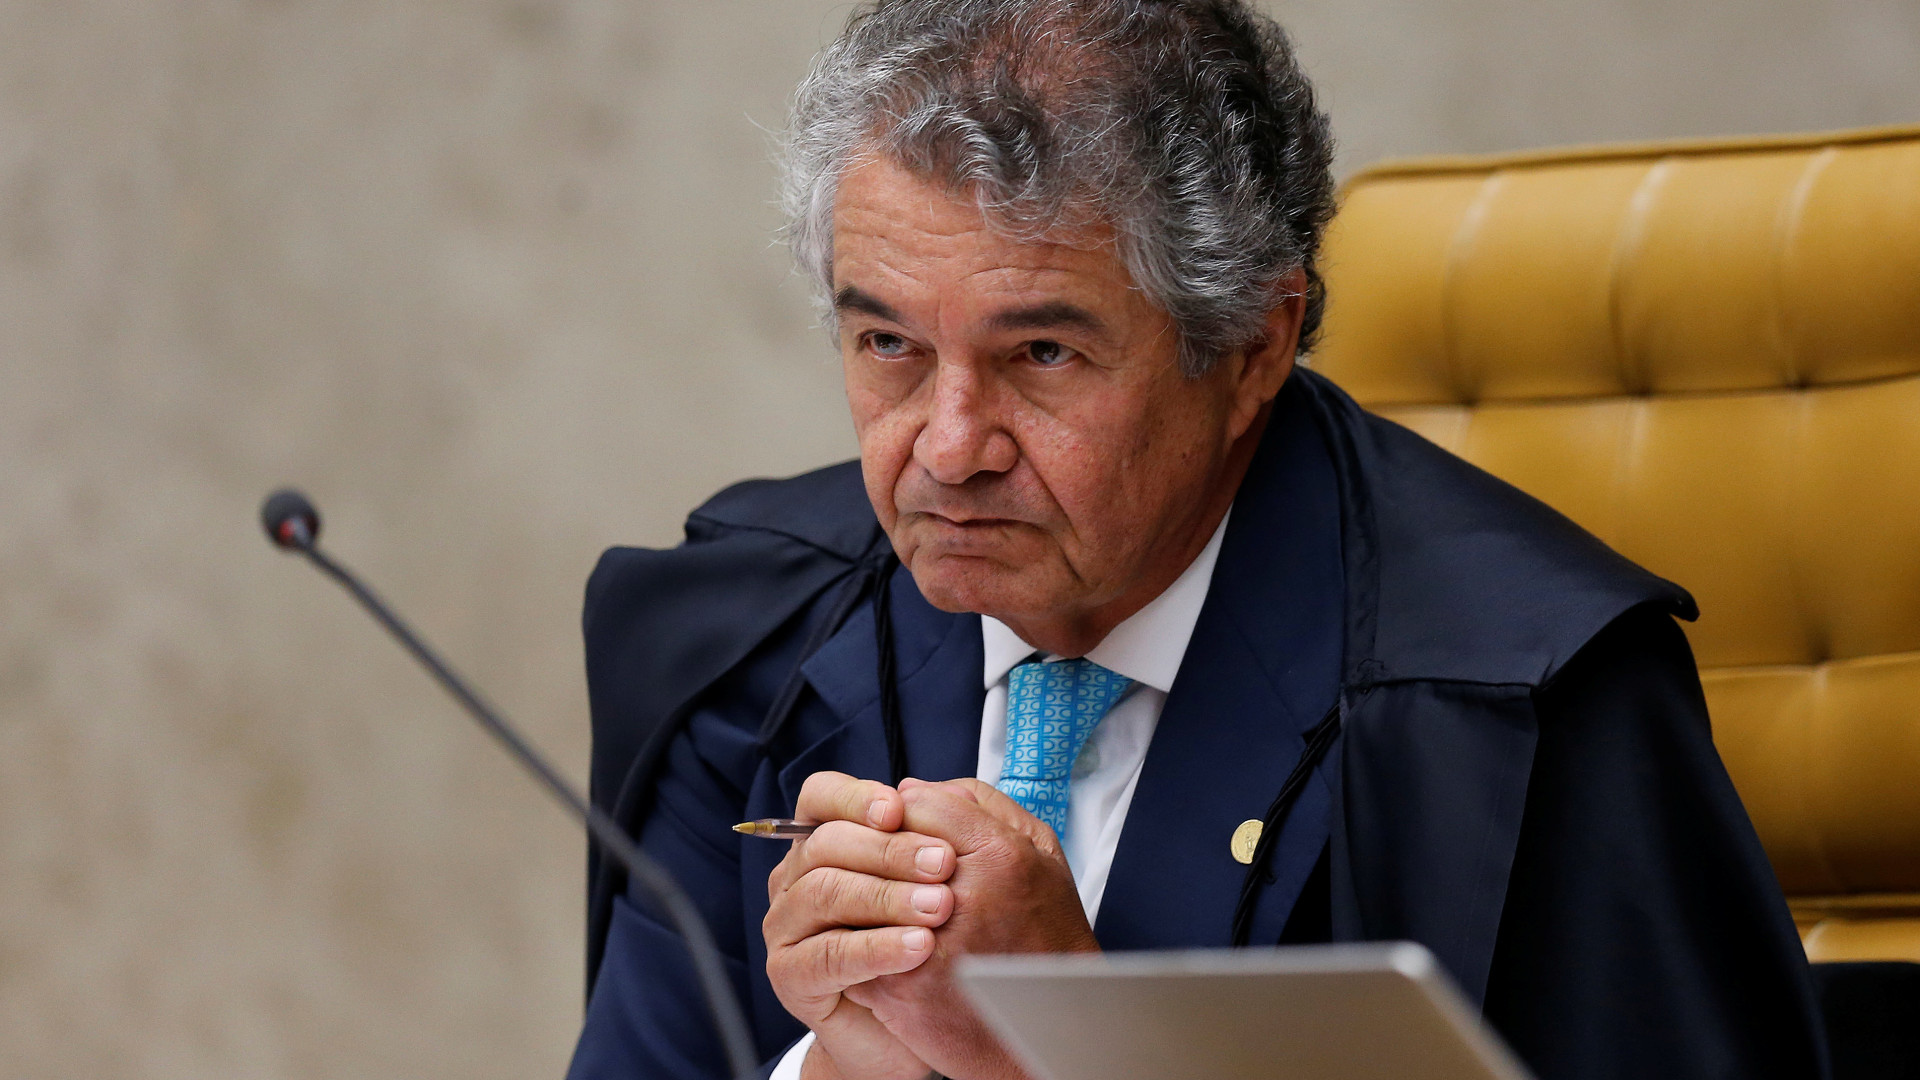 Procuradores criticam Marco Aurélio por 'posição isolada'